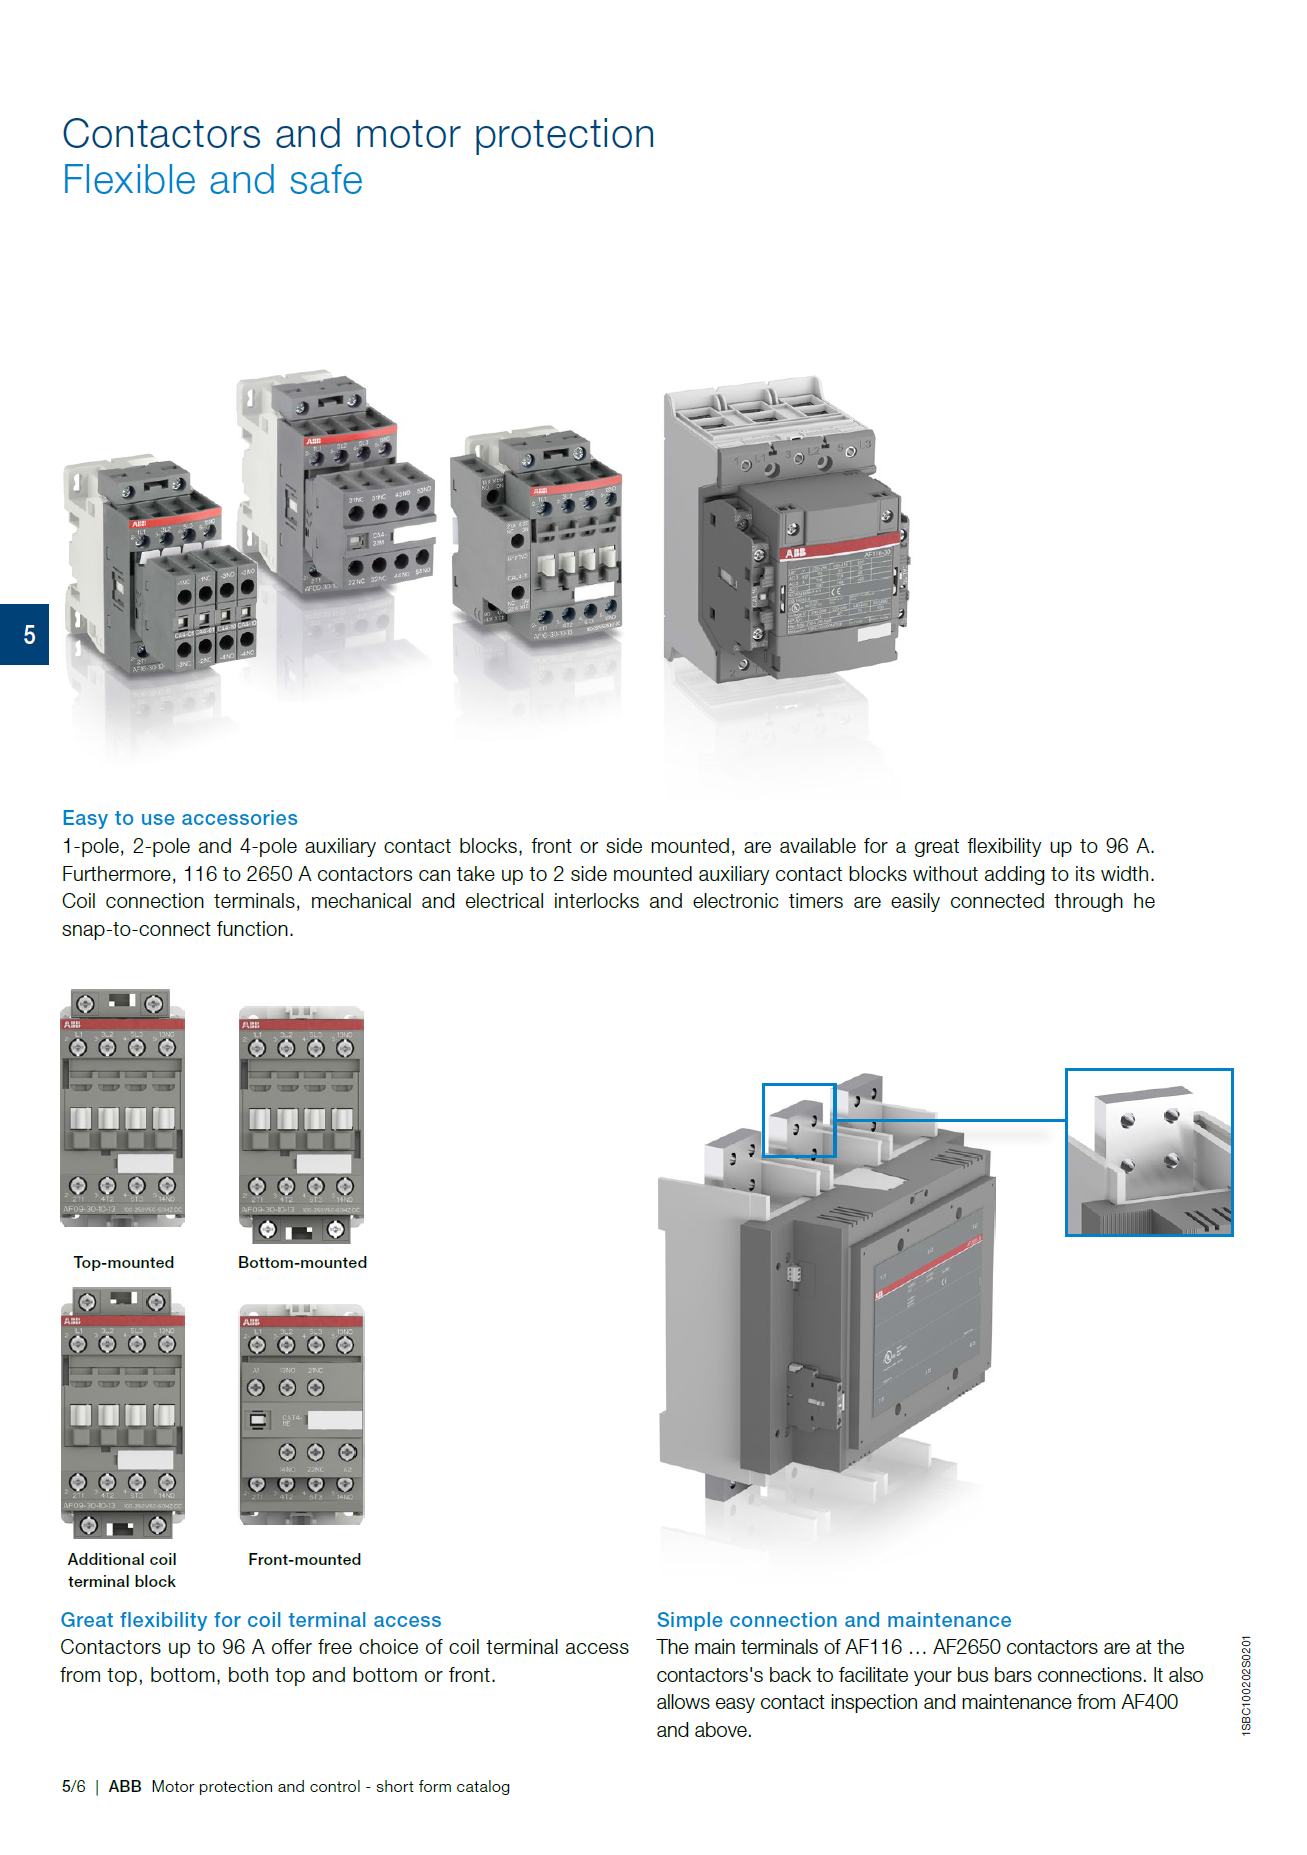 ABB Magnetic Contactors AF Series : AF30-30-00-11